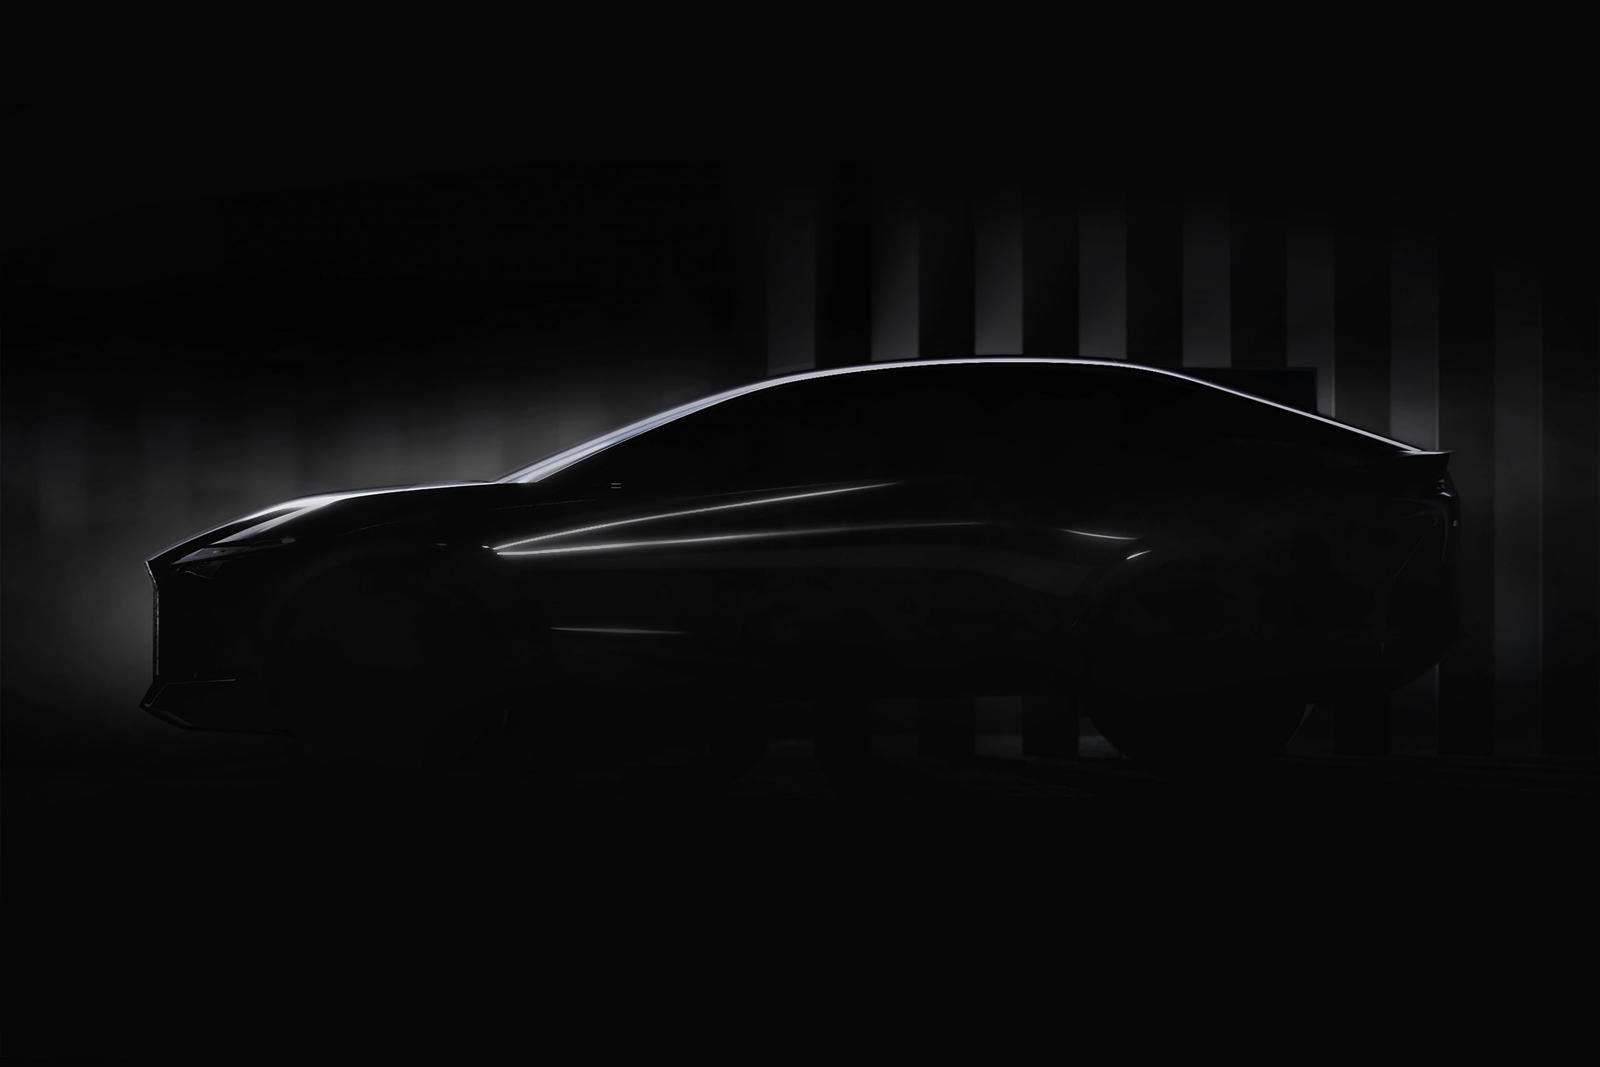 Вместе с изображениями мы получаем следующие слова: «Lexus представит свое видение будущего, а также новую концепцию, которая символизирует его намерения на будущее и знаменует начало следующего поколения». На самом деле это почти ничего не говорит н